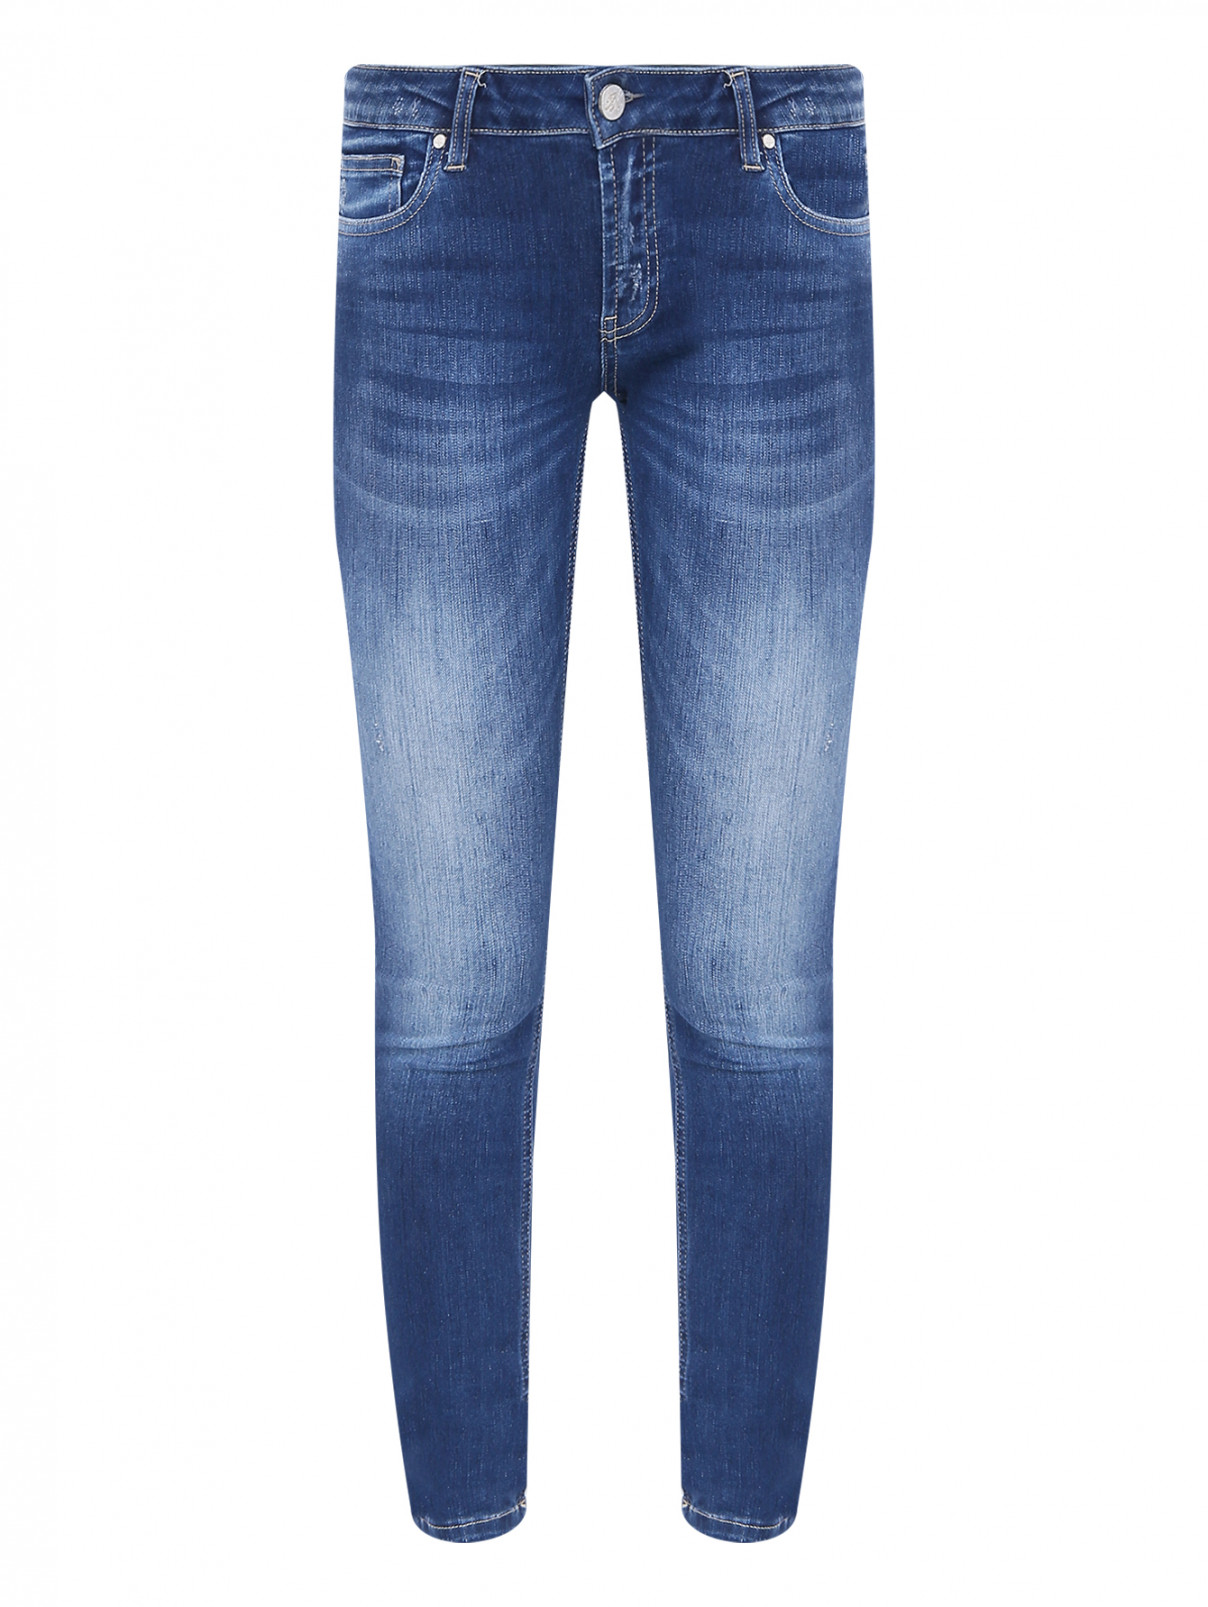 Зауженные джинсы с потертостями Frankie Morello  –  Общий вид  – Цвет:  Синий